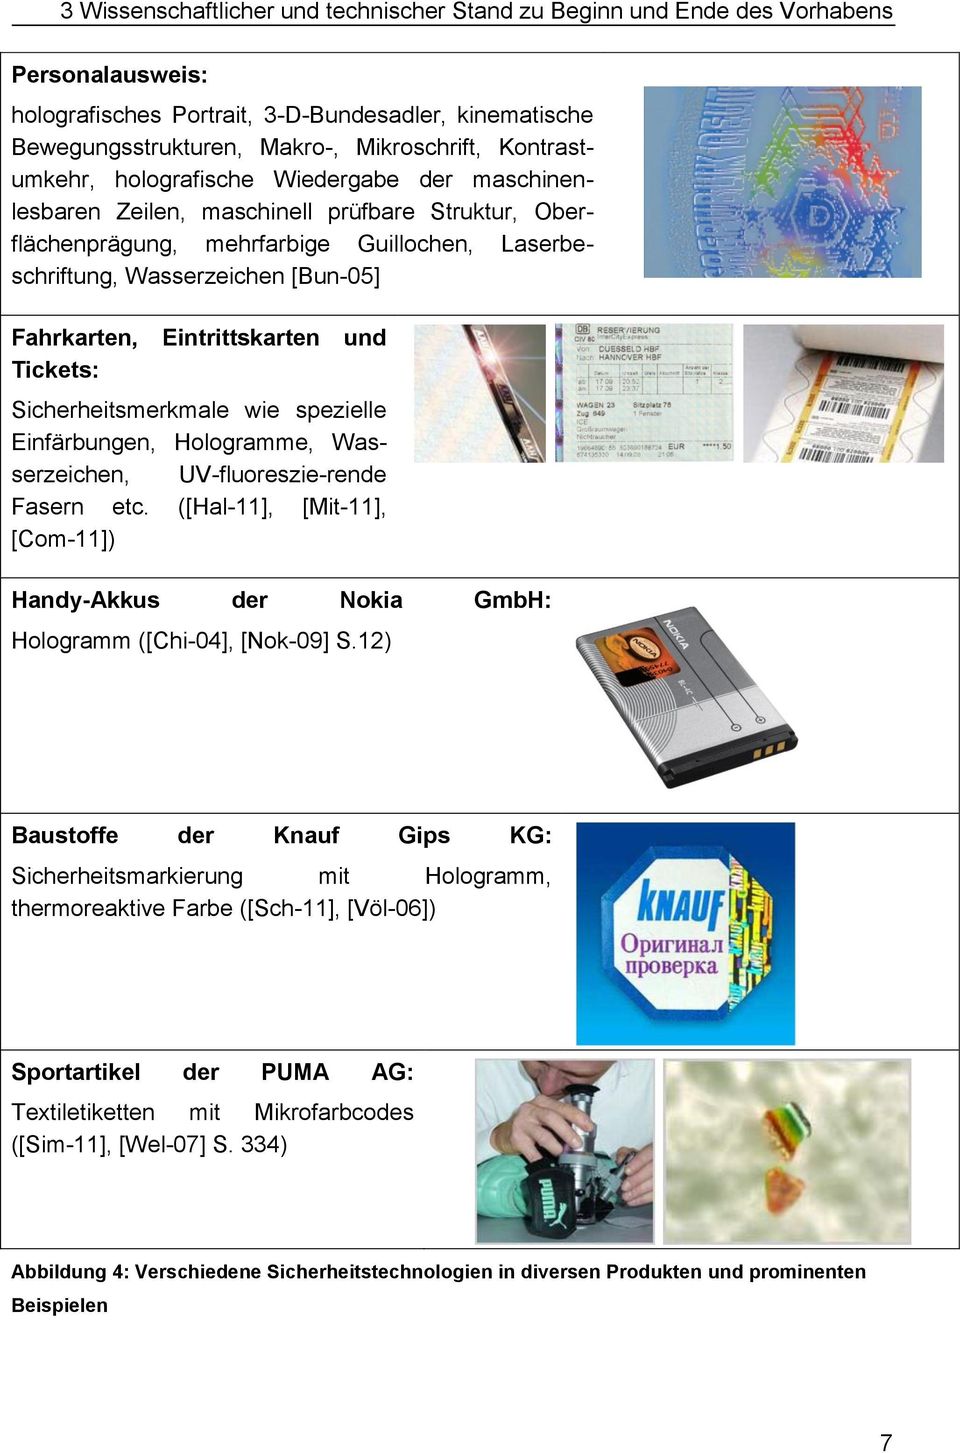 Hologramme, Wasserzeichen, UV-fluoreszie-rende Fasern etc. ([Hal-11], [Mit-11], [Com-11]) Handy-Akkus der Nokia GmbH: Hologramm ([Chi-04], [Nok-09] S.